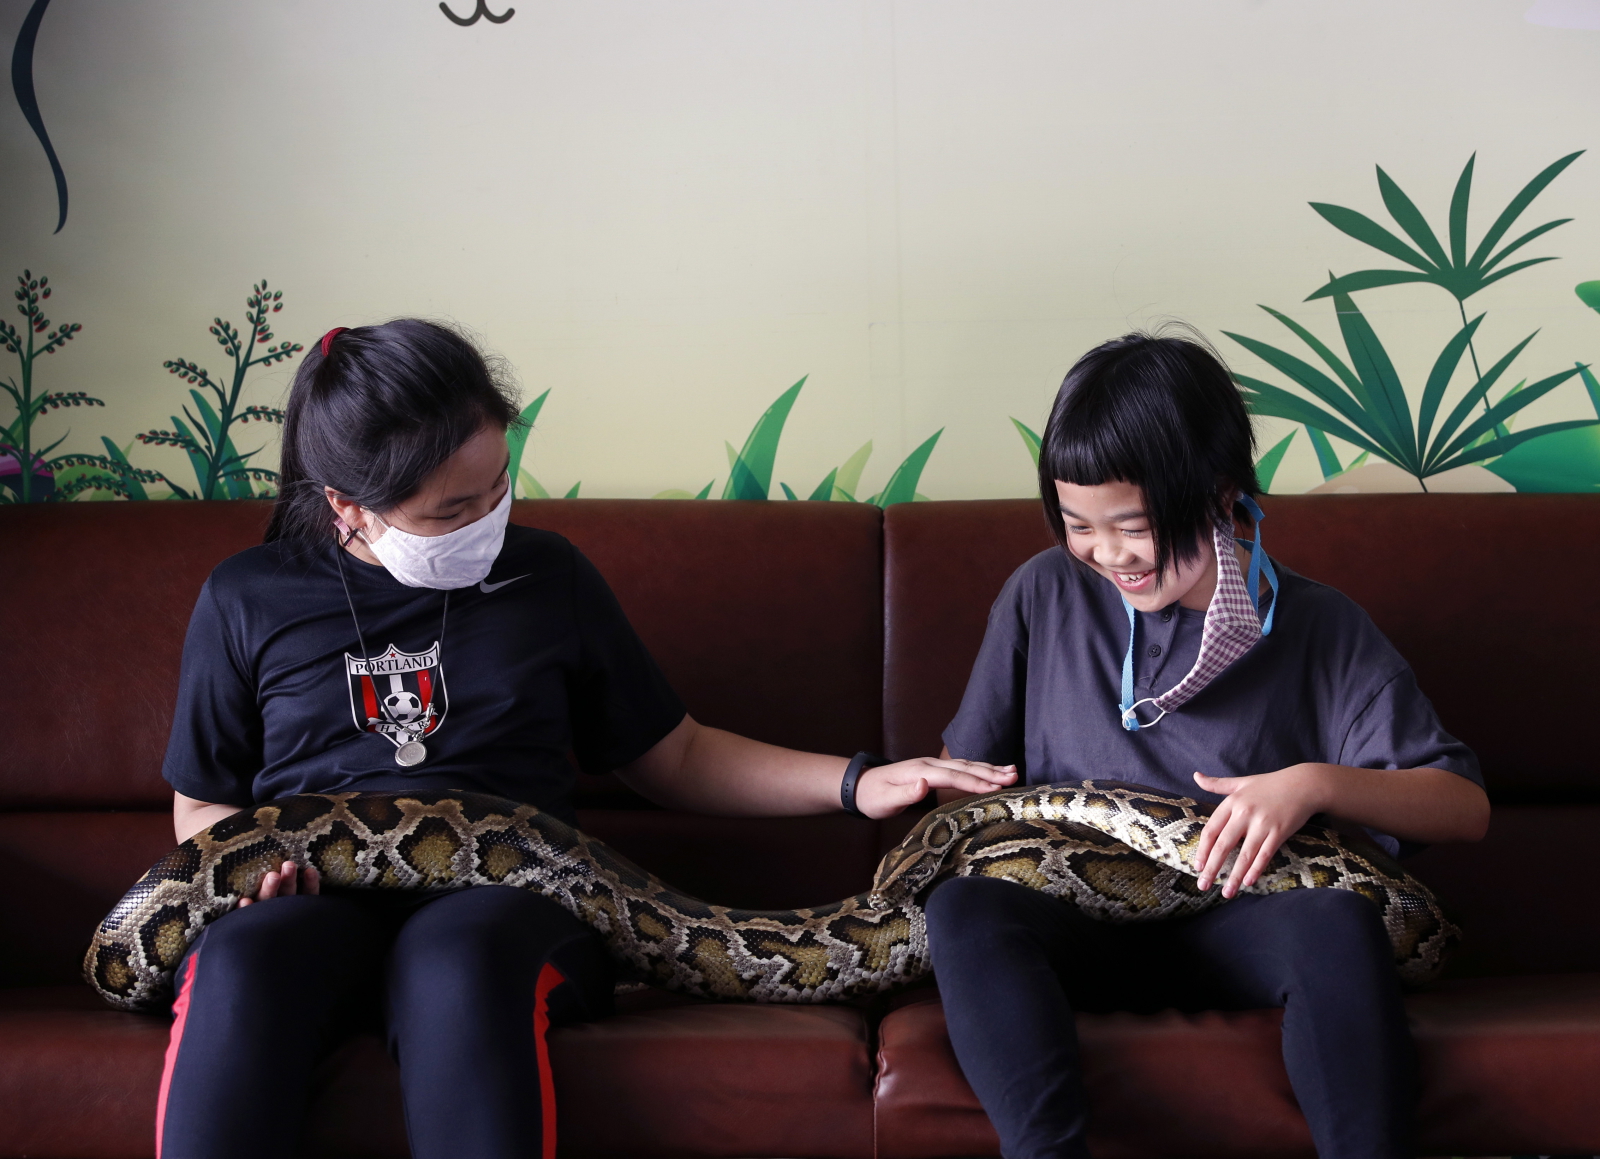 Węże zdają się lubić towarzystwo ludzi EPA/RUNGROJ YONGRIT